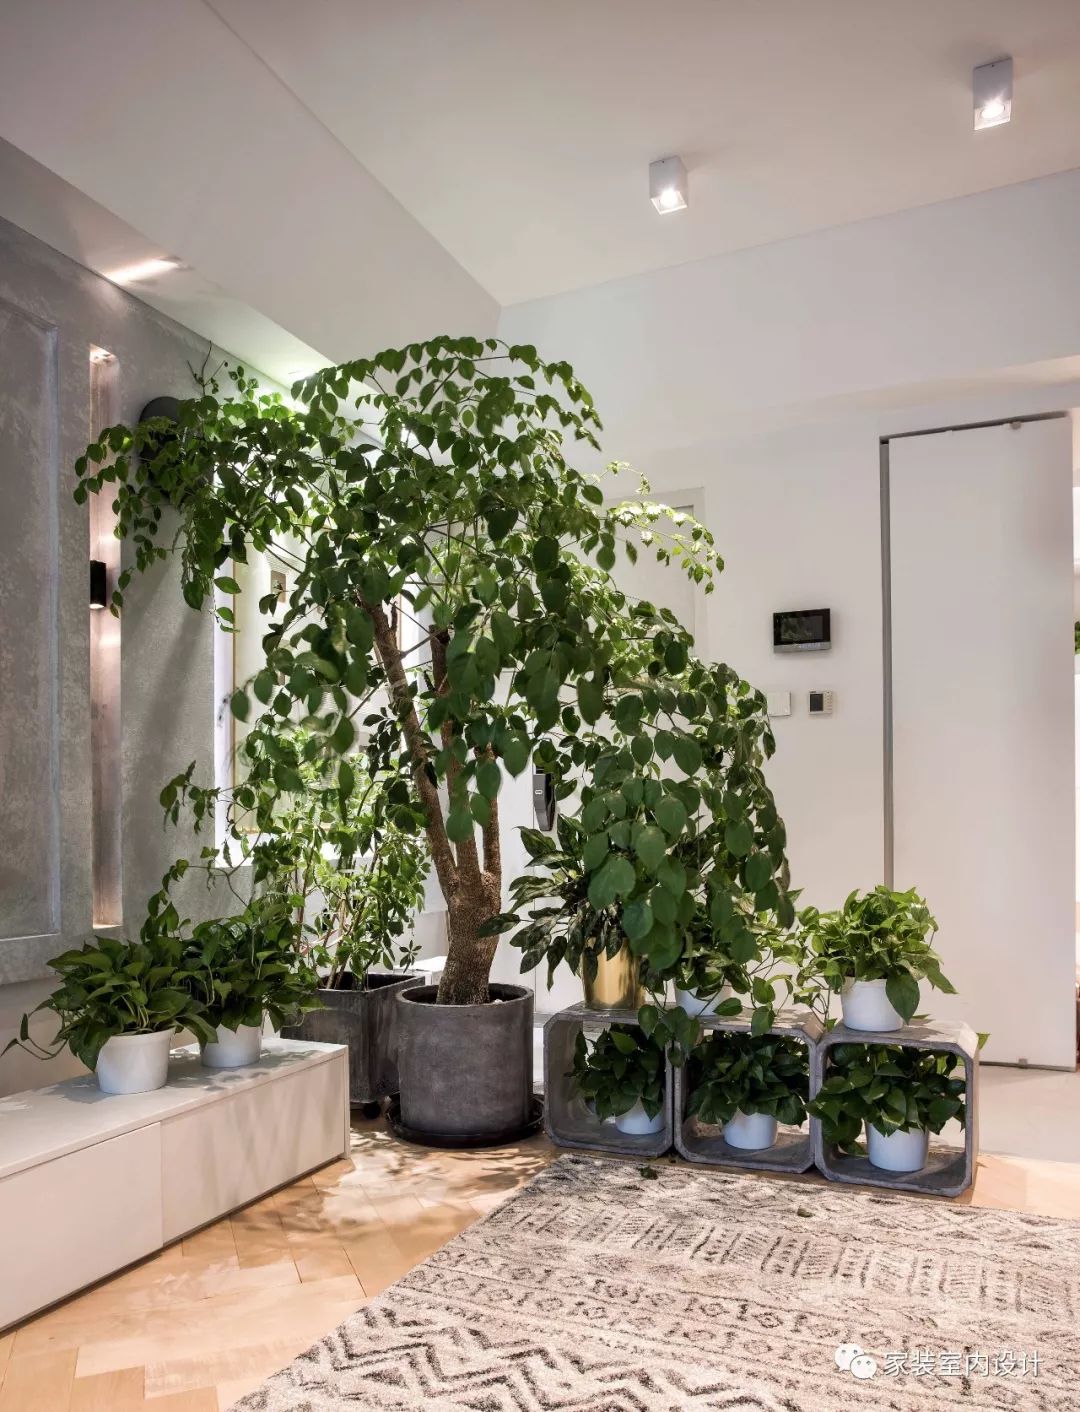 绿植装饰增添了室内的清新活力气息,也是玄关与客厅之间的隔断.